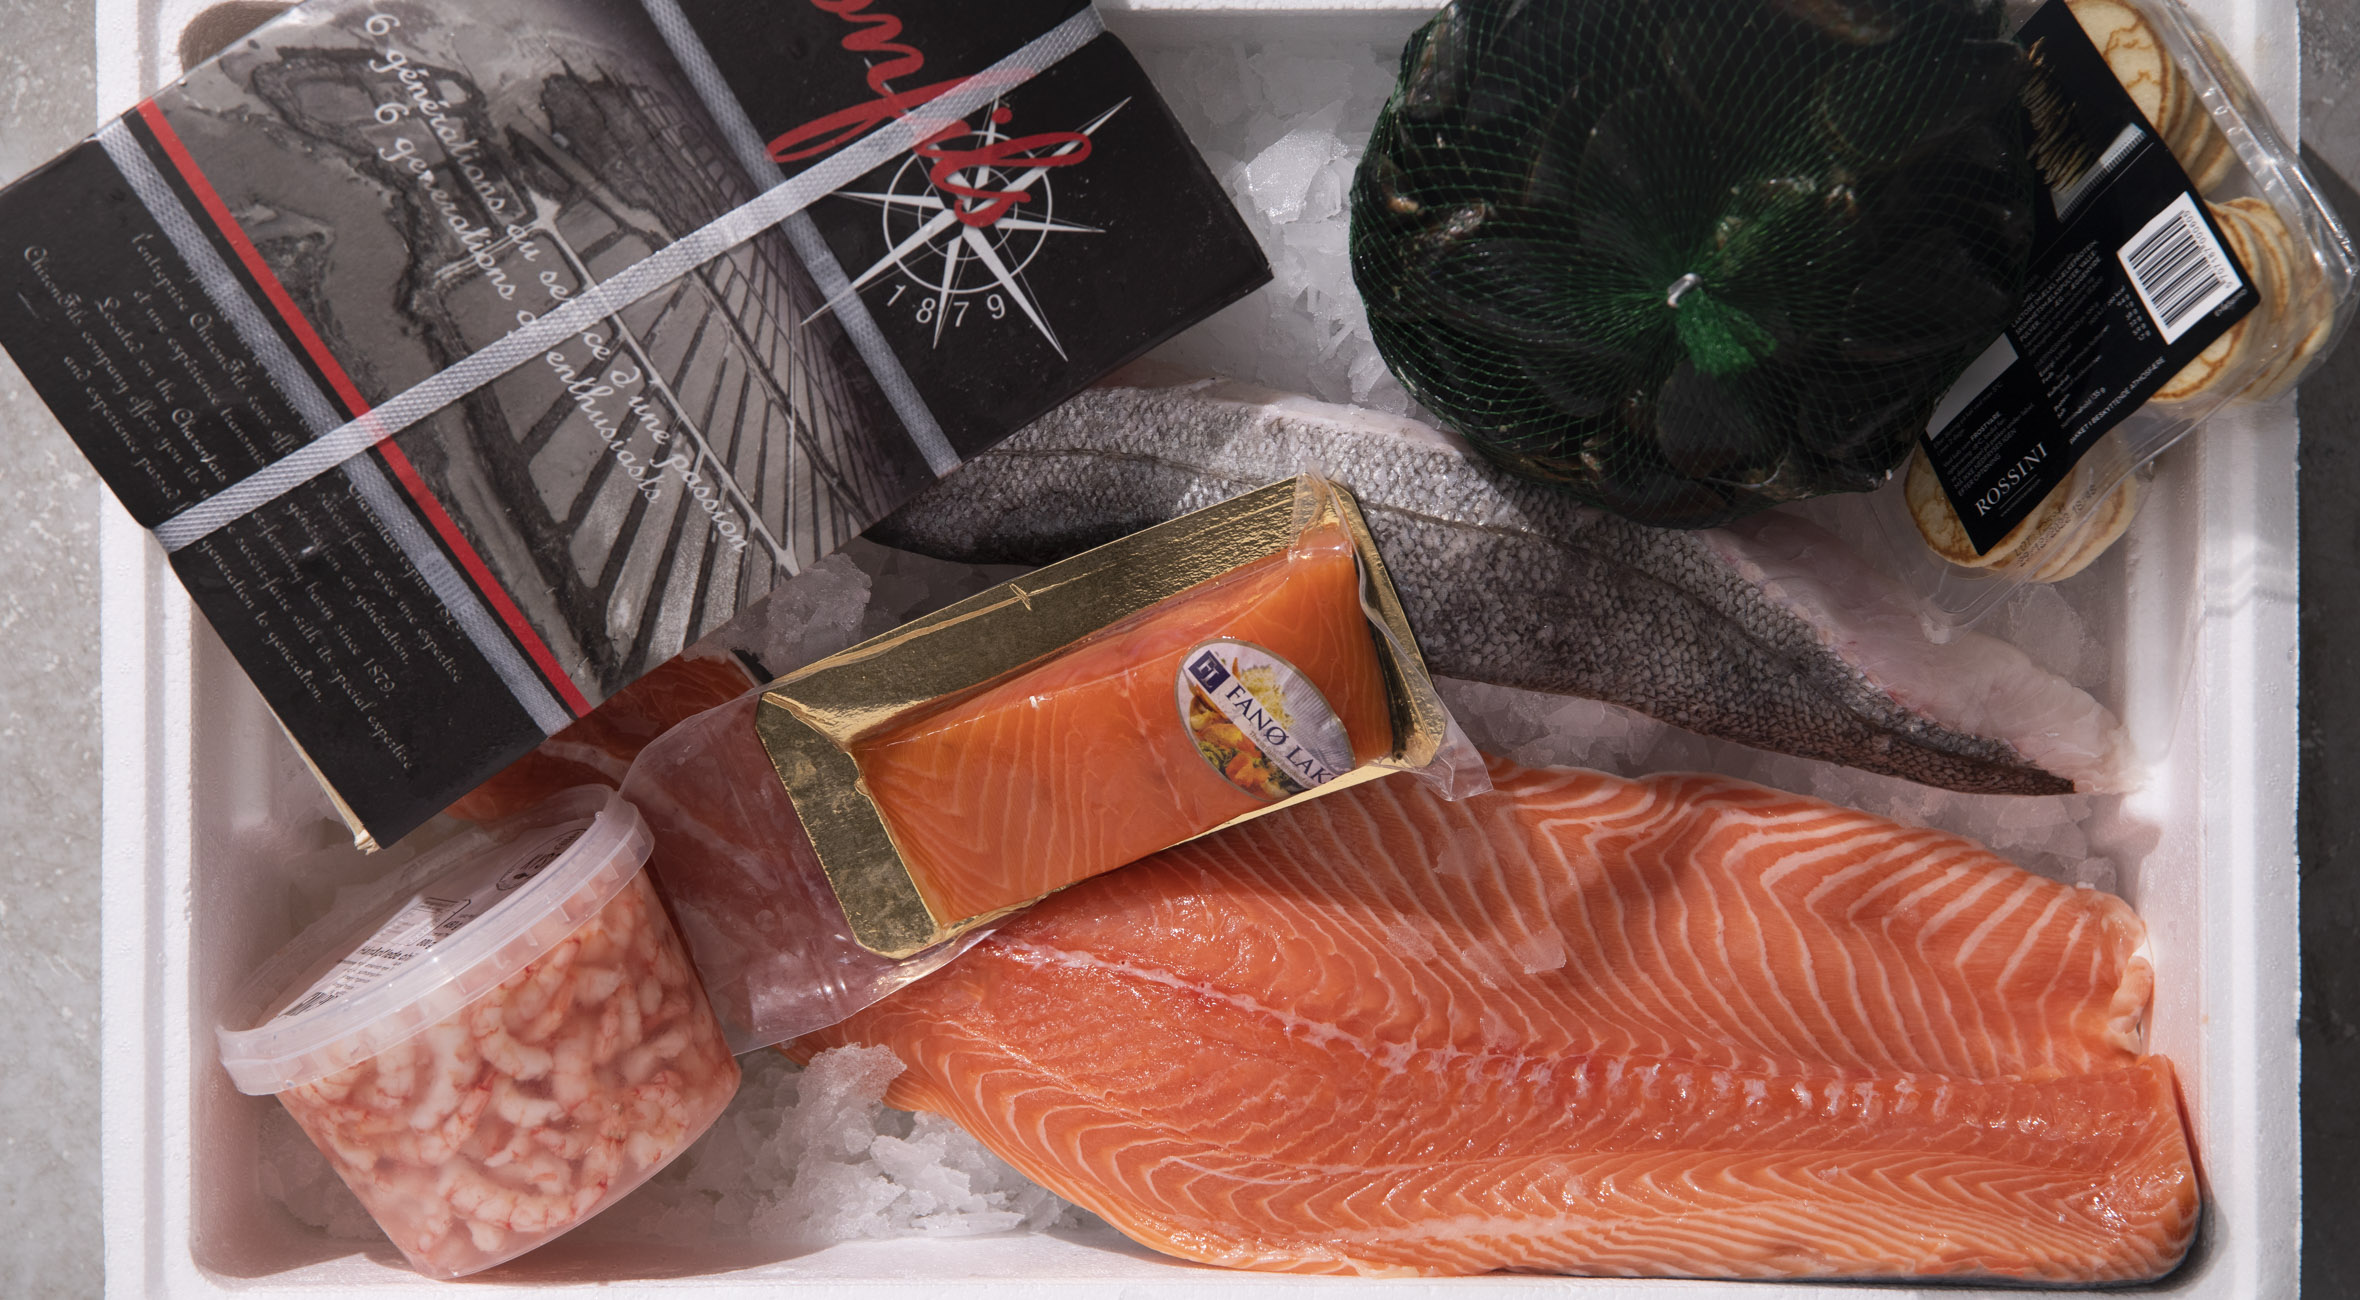 Frit valg til alt hos Kystfisken – Online fiskeforretning har åbnet op for levering i København og omegn! Få friskfangede fisk og skaldyr leveret til døren